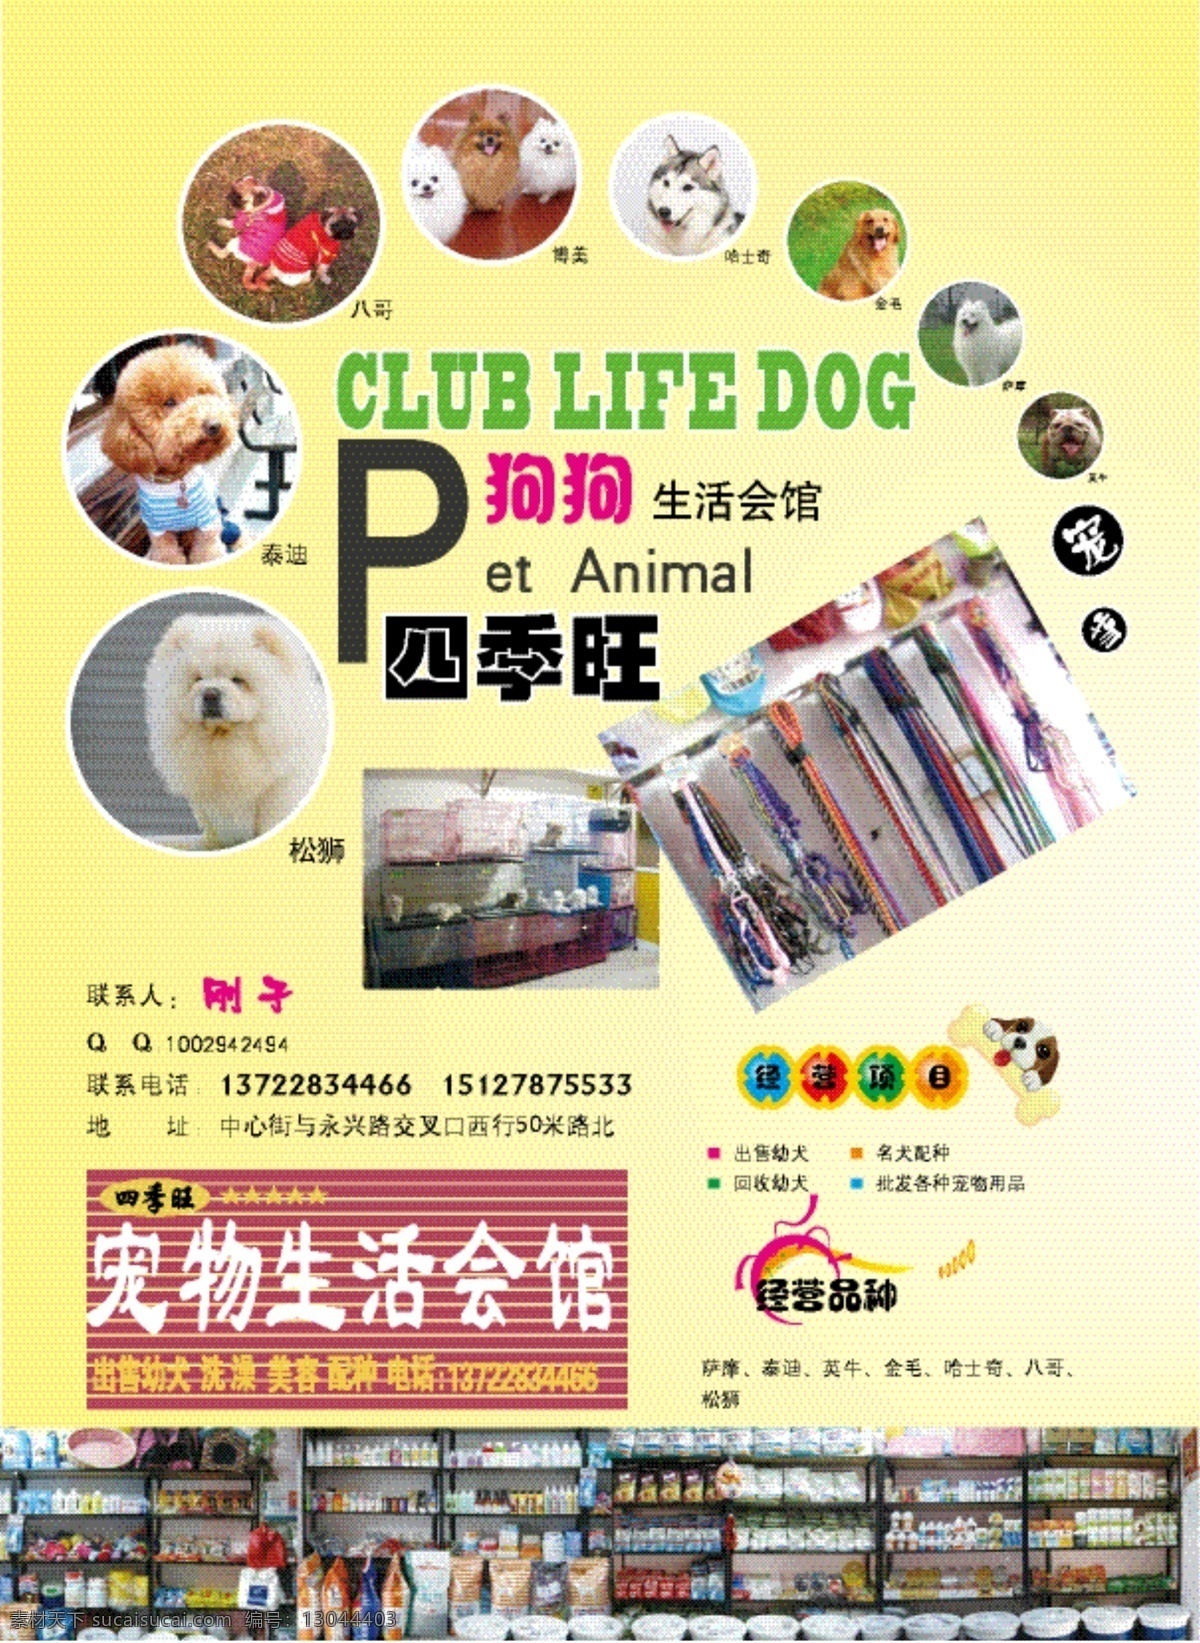 dm宣传单 宠物 狗狗 广告 杂志 狗 生活 会馆 矢量 模板下载 狗狗生活会馆 宠物食品 画册 其他画册整套